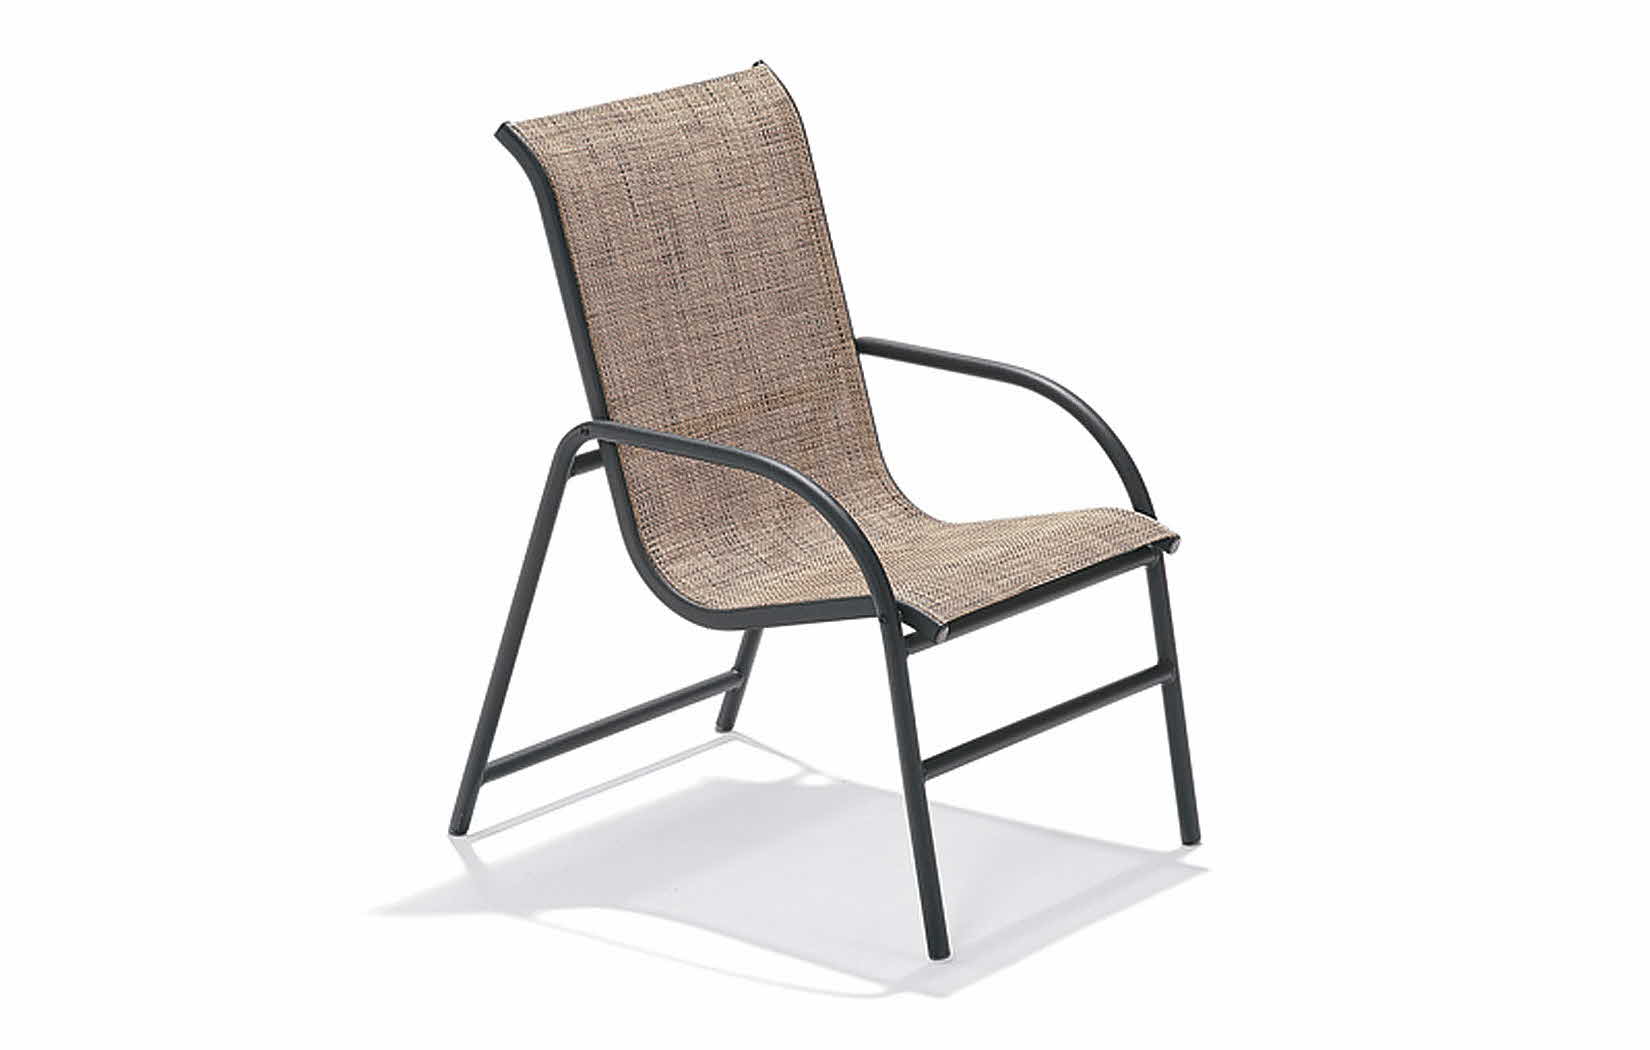 Oasis Sling Poolside Chair